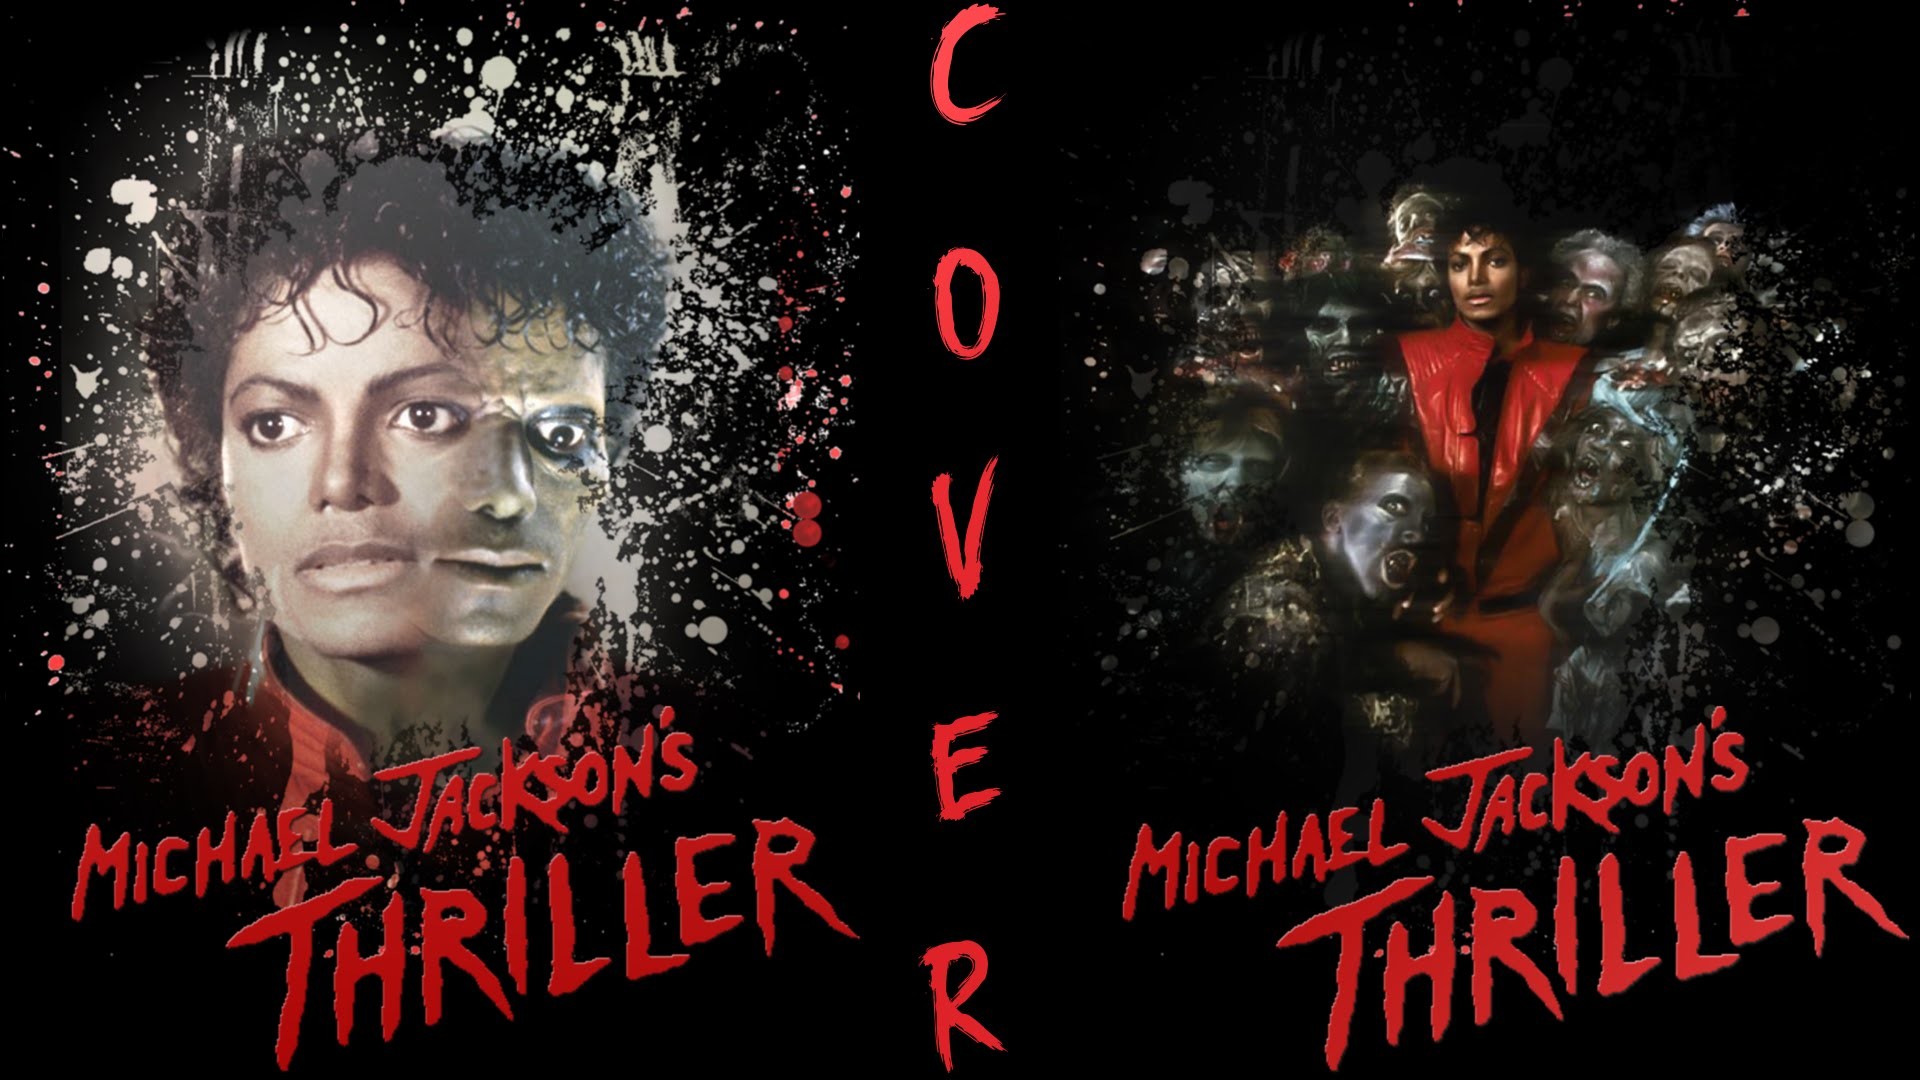 1920x1080 Mj Thriller Album Cover : Vintage michael jackson thriller album cover iron  on transfer